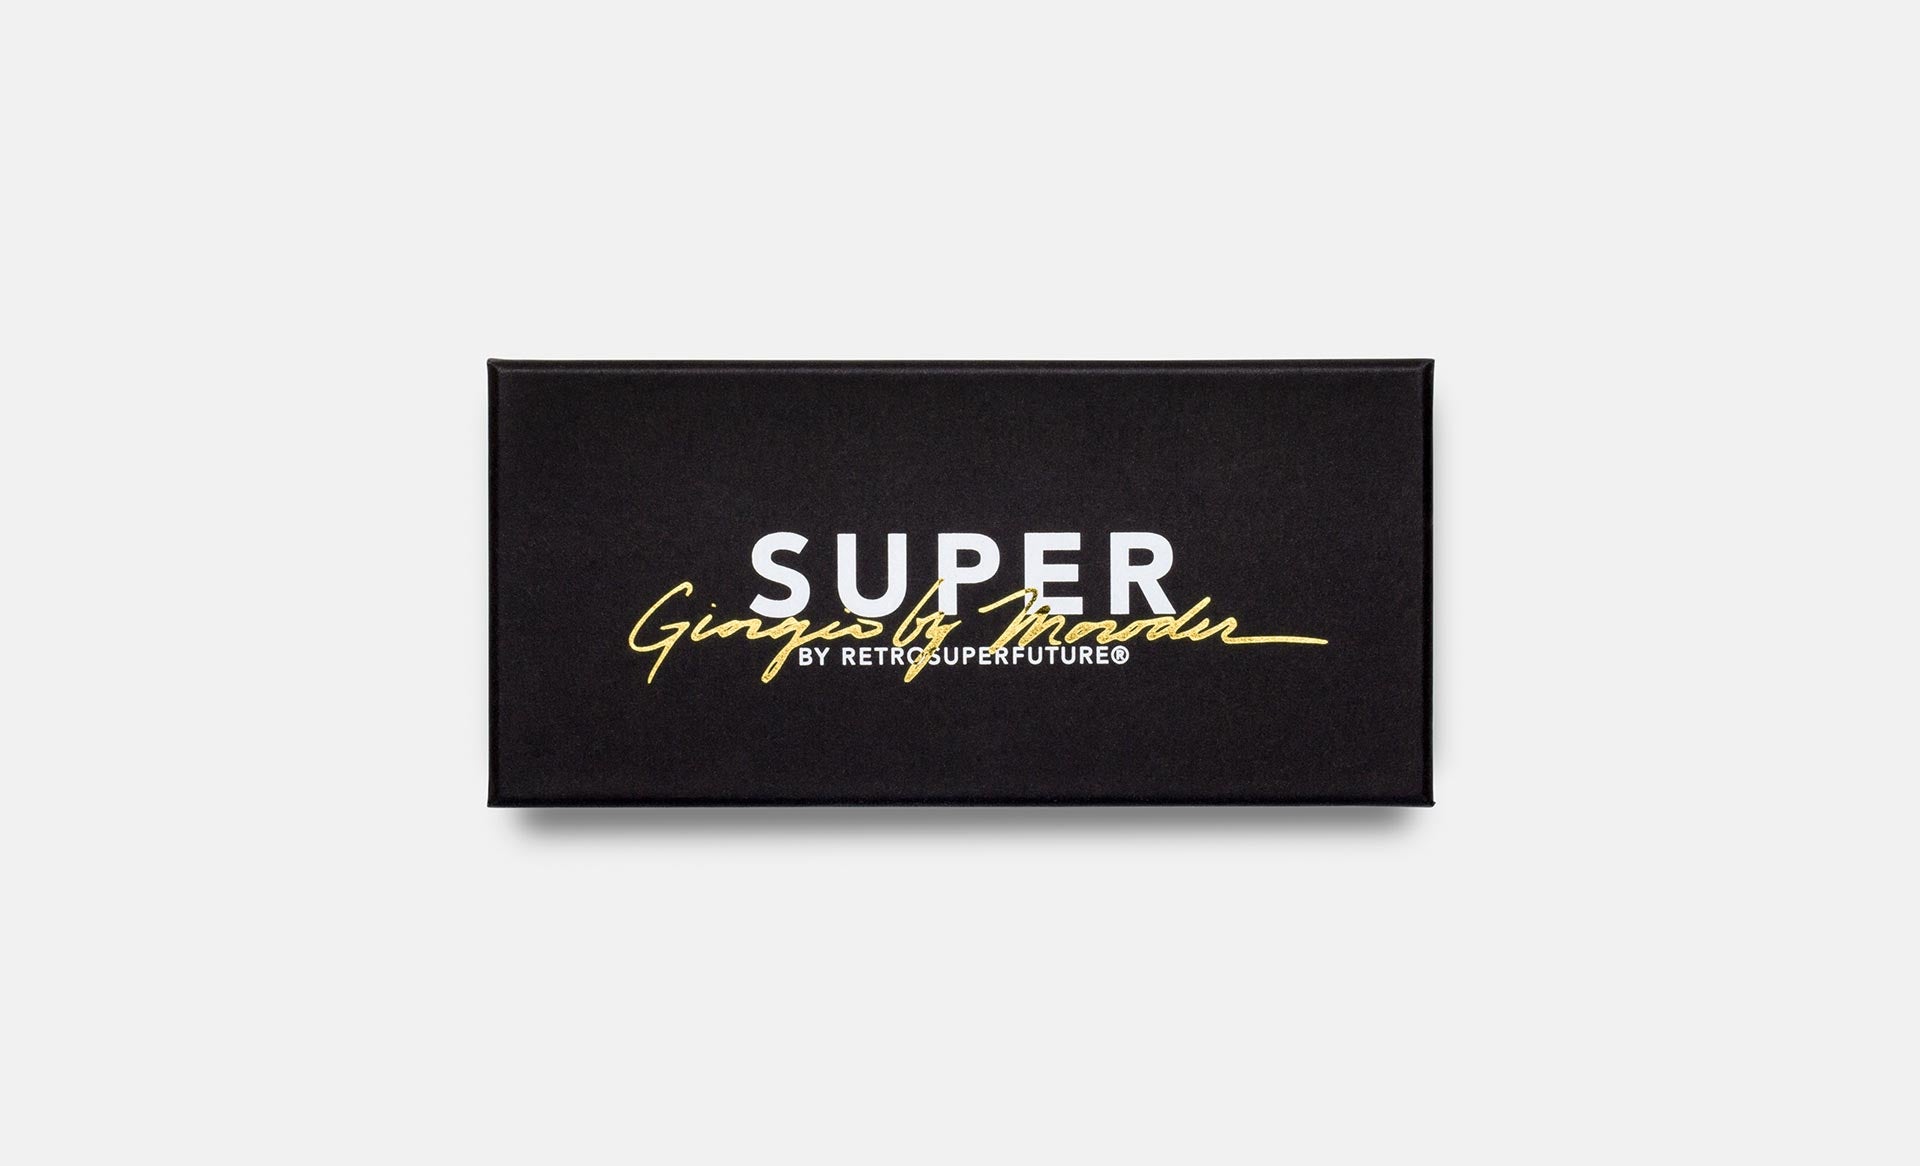 Super & Giorgio Moroder - Retrosuperfuture -